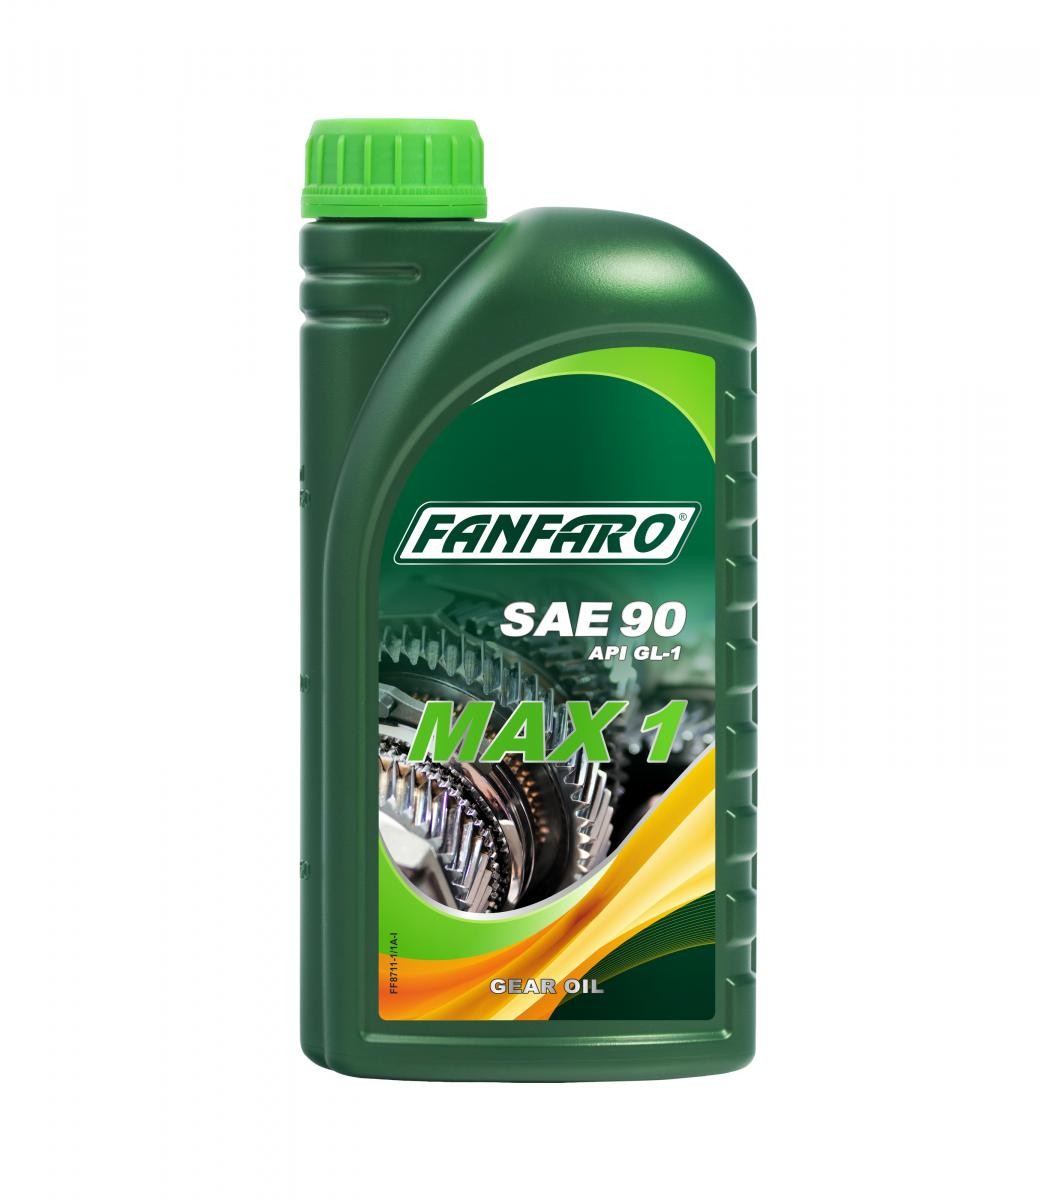 FF8711-1 FANFARO Gear oil buy cheap